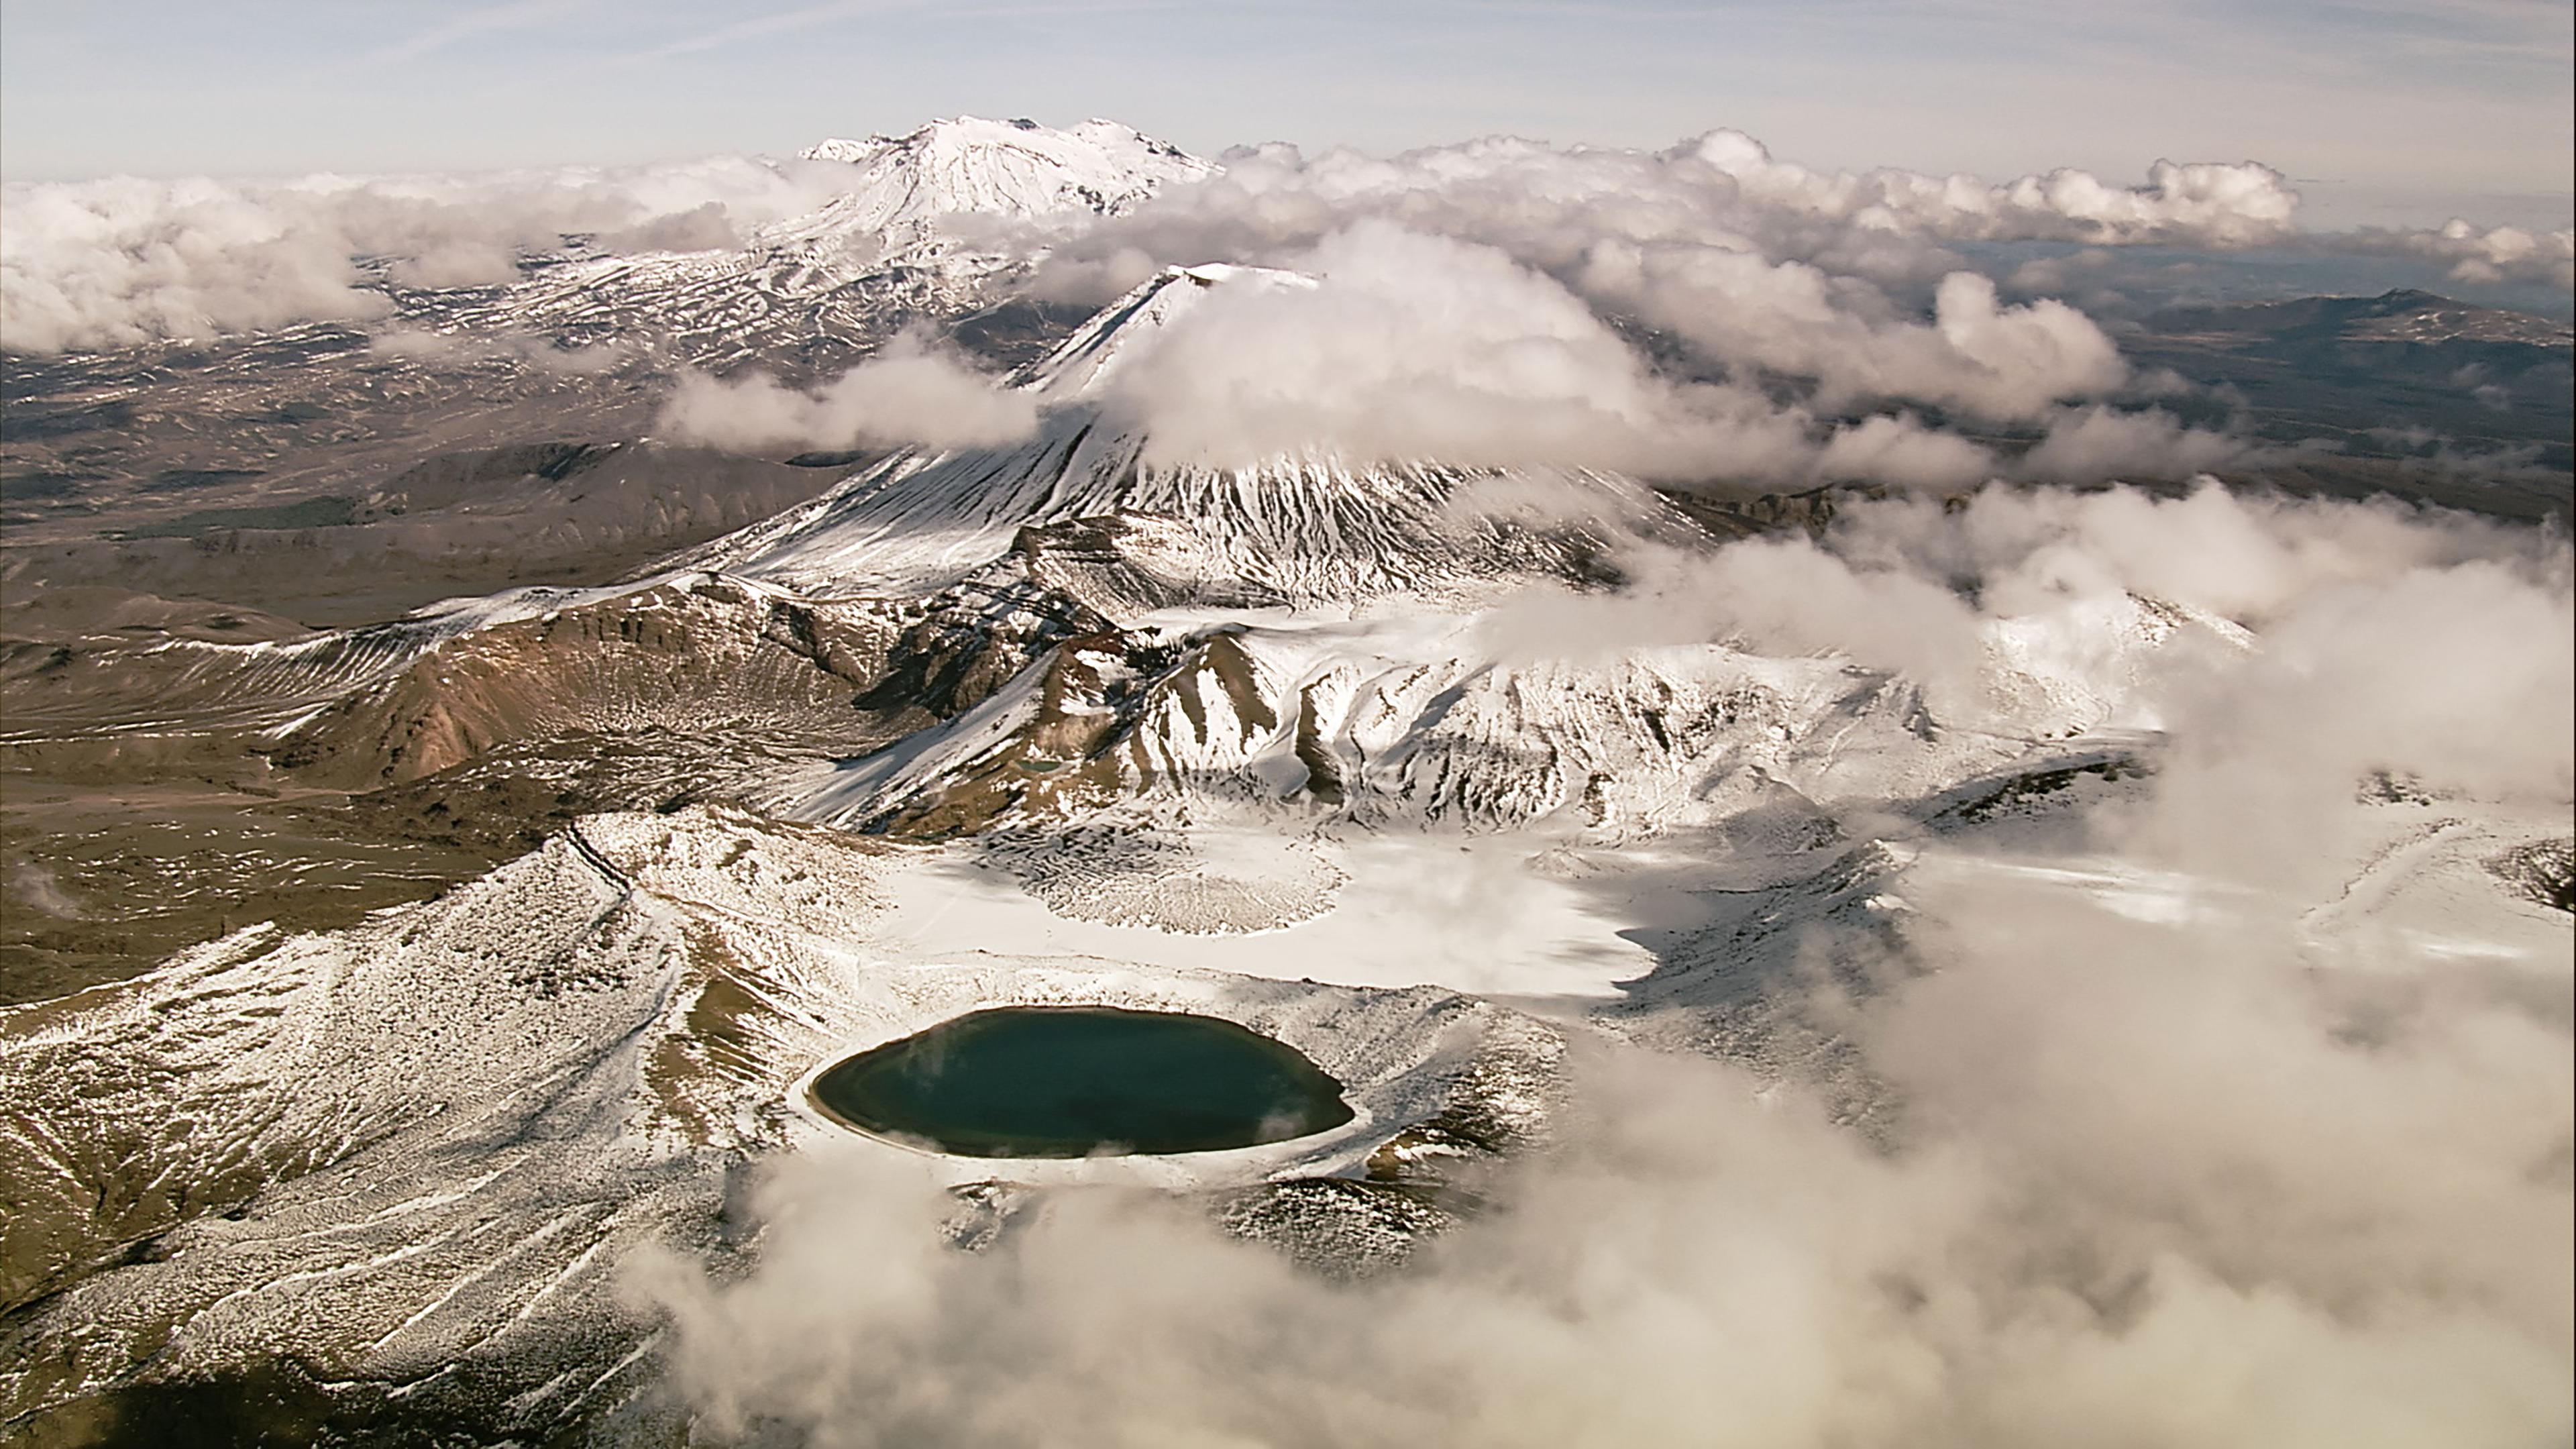 "Vulkane in Neuseeland: Schöpfung und Zerstörung": Vogelperspektive der drei schneebedeckten Berge.